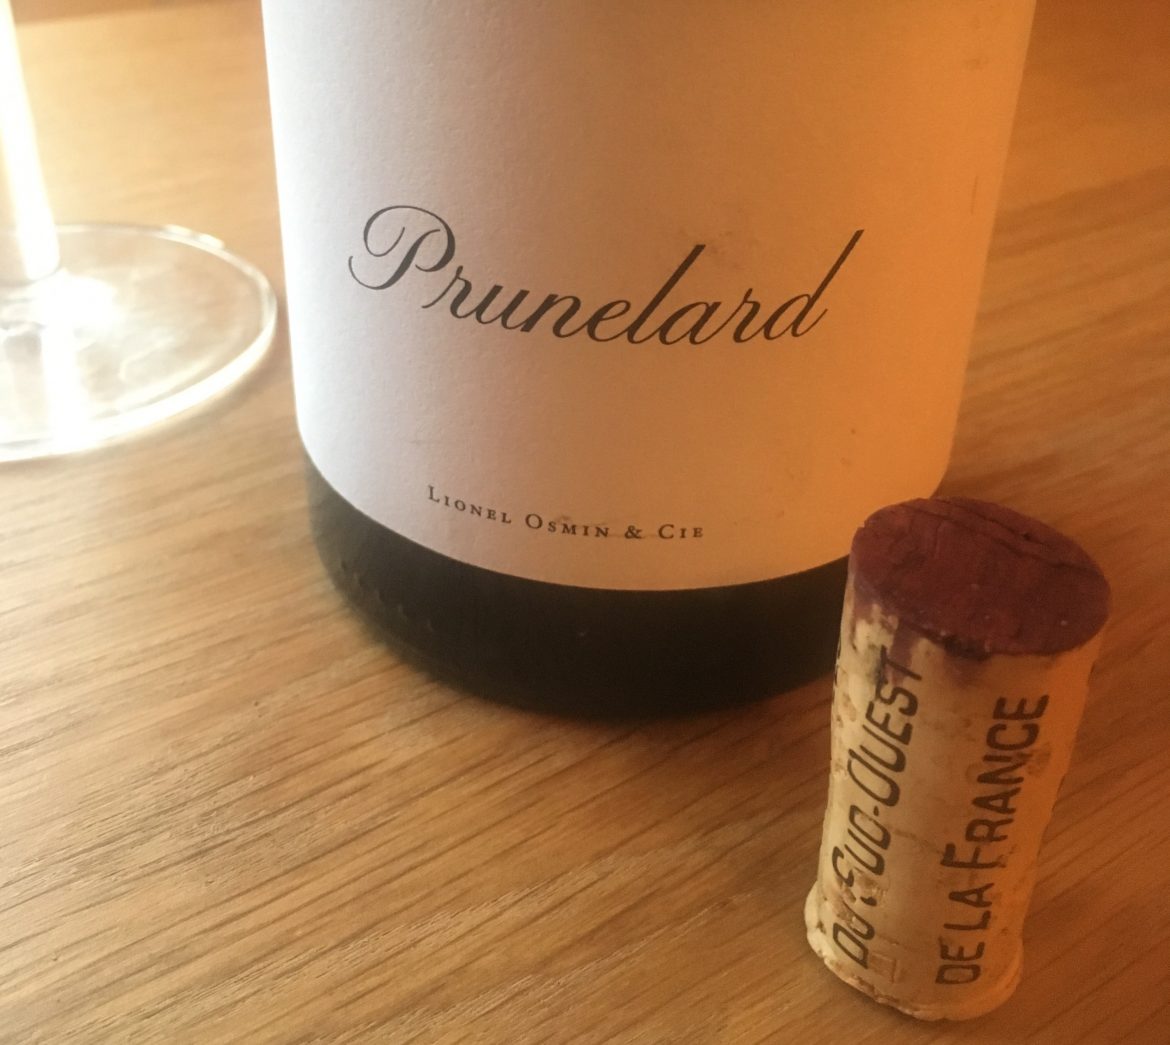 What does Prunelard wine taste like?